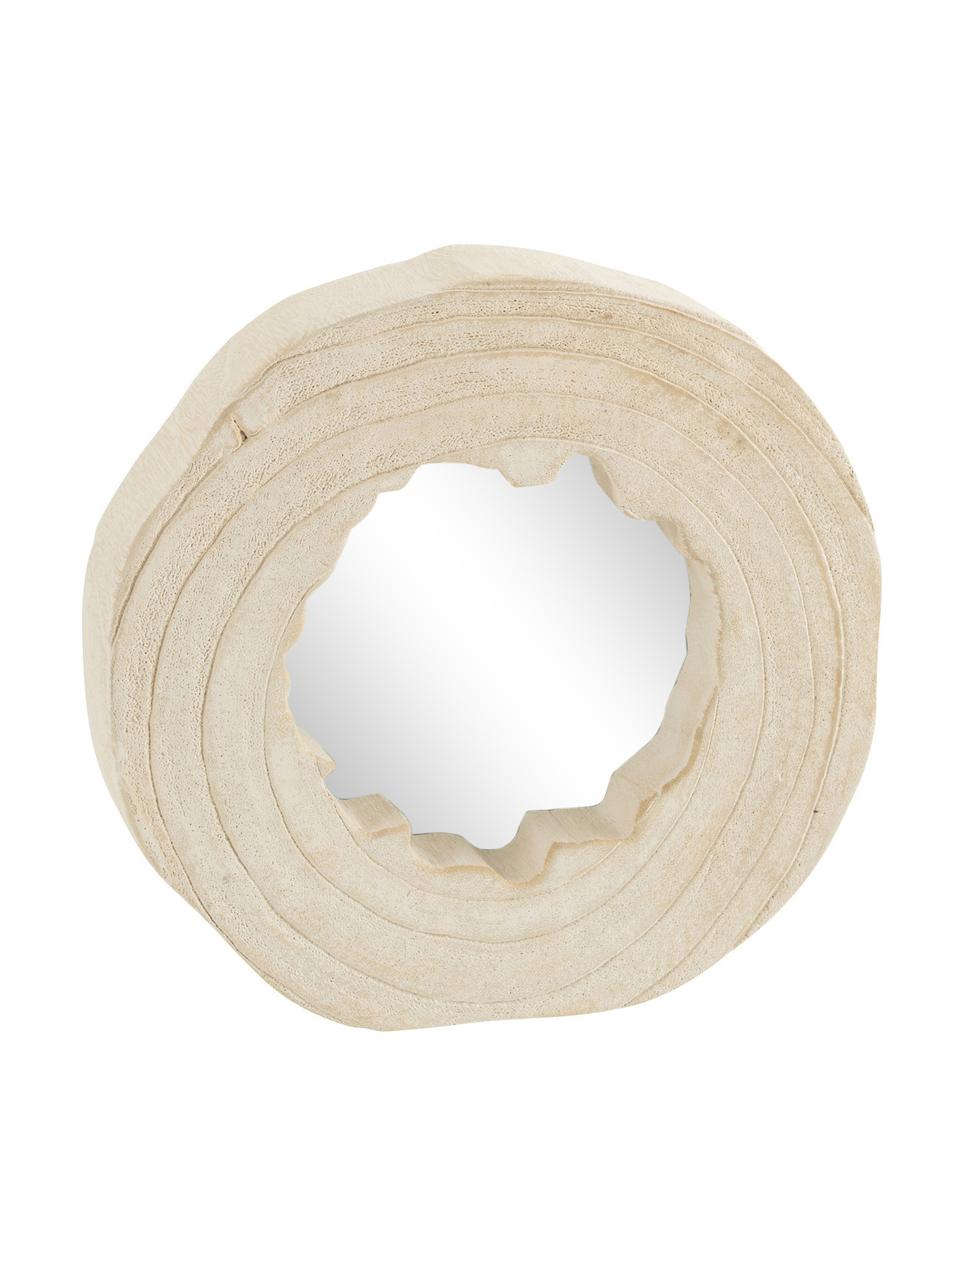 Okrągłe lustro ścienne z drewna paulownia Nature, Beżowy, Ø 28 cm